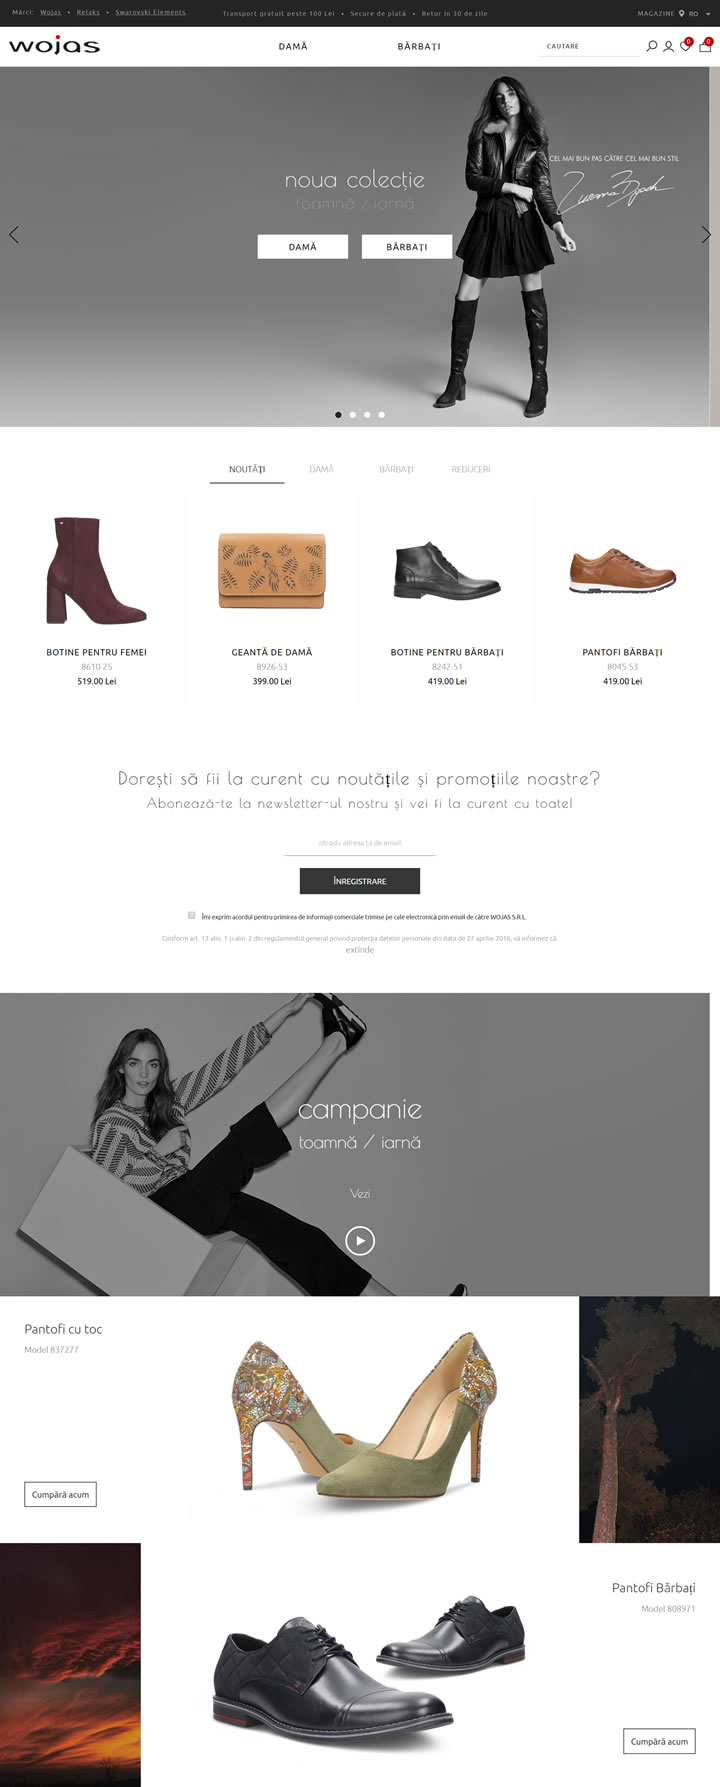 Wojas罗马尼亚网站：波兰皮鞋品牌